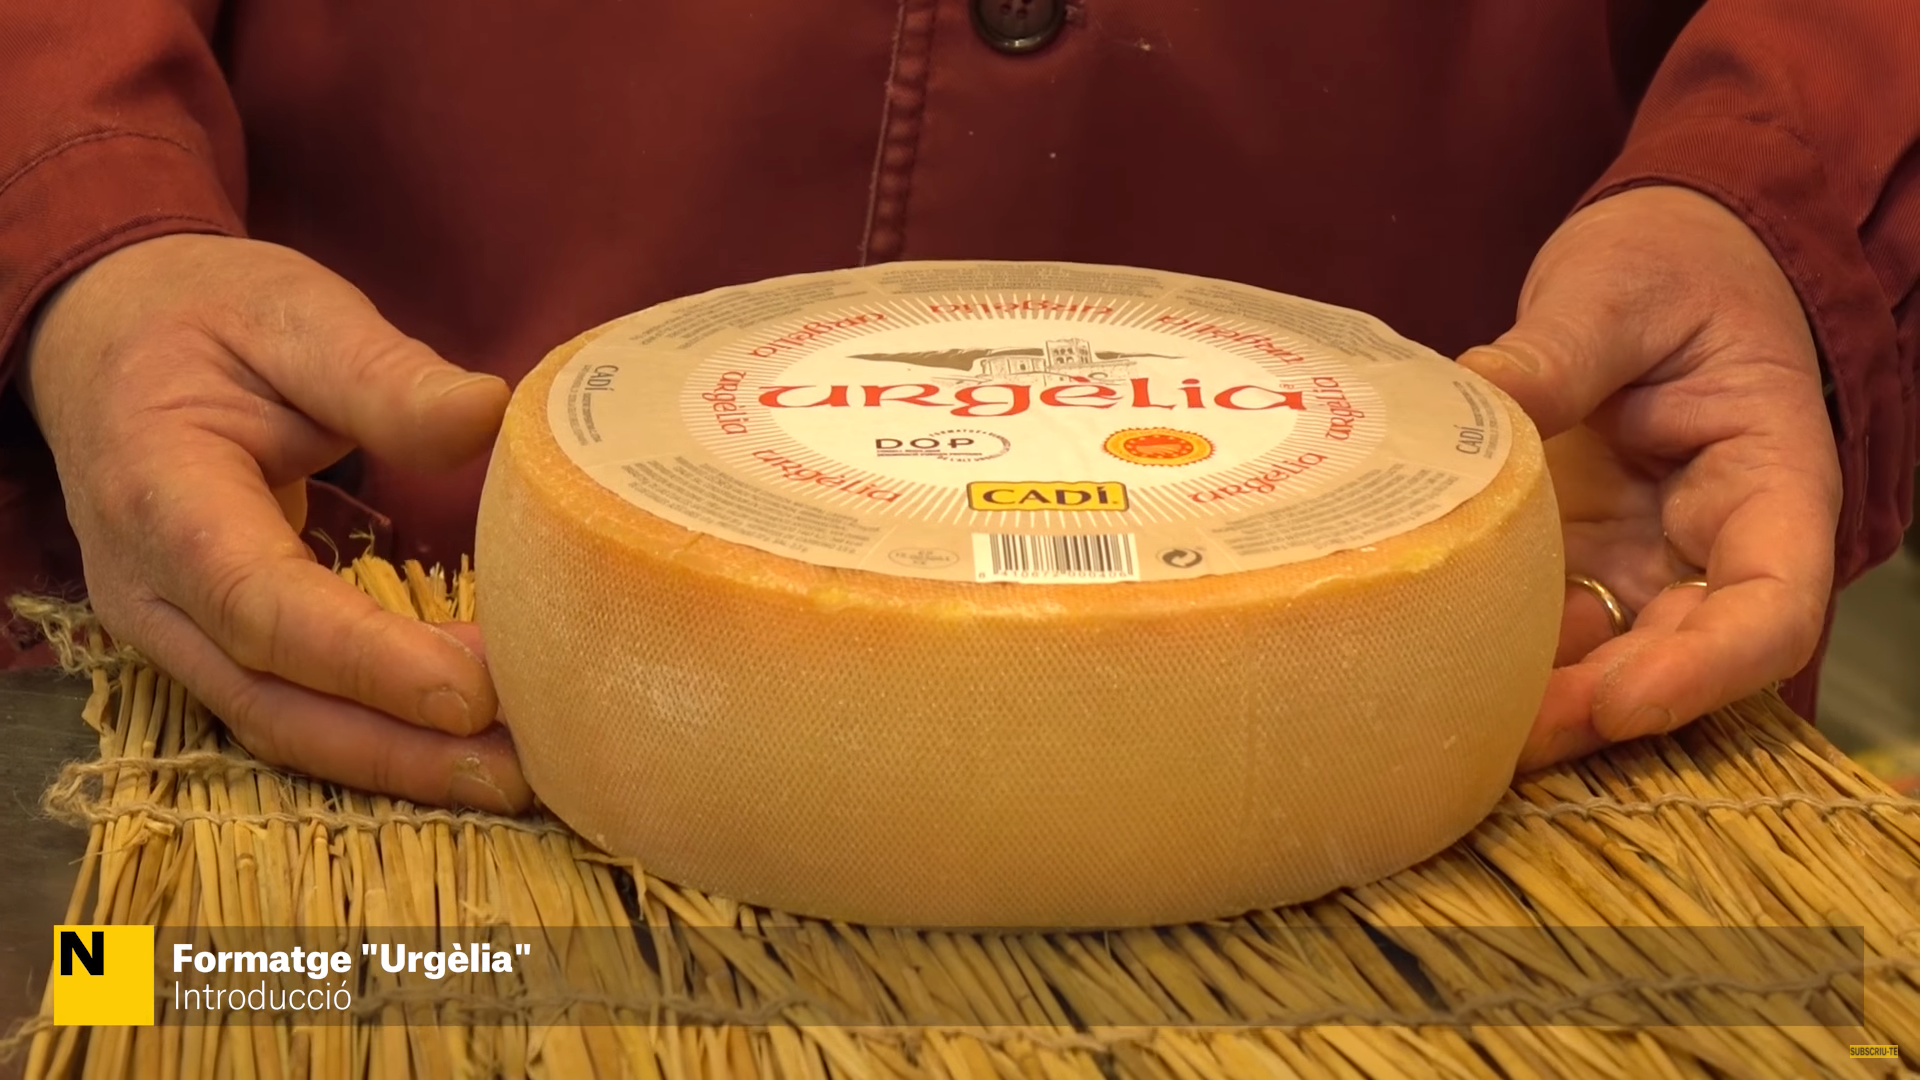 El formatge Urgèlia guanya l'or als prestigiosos Sofi Awards